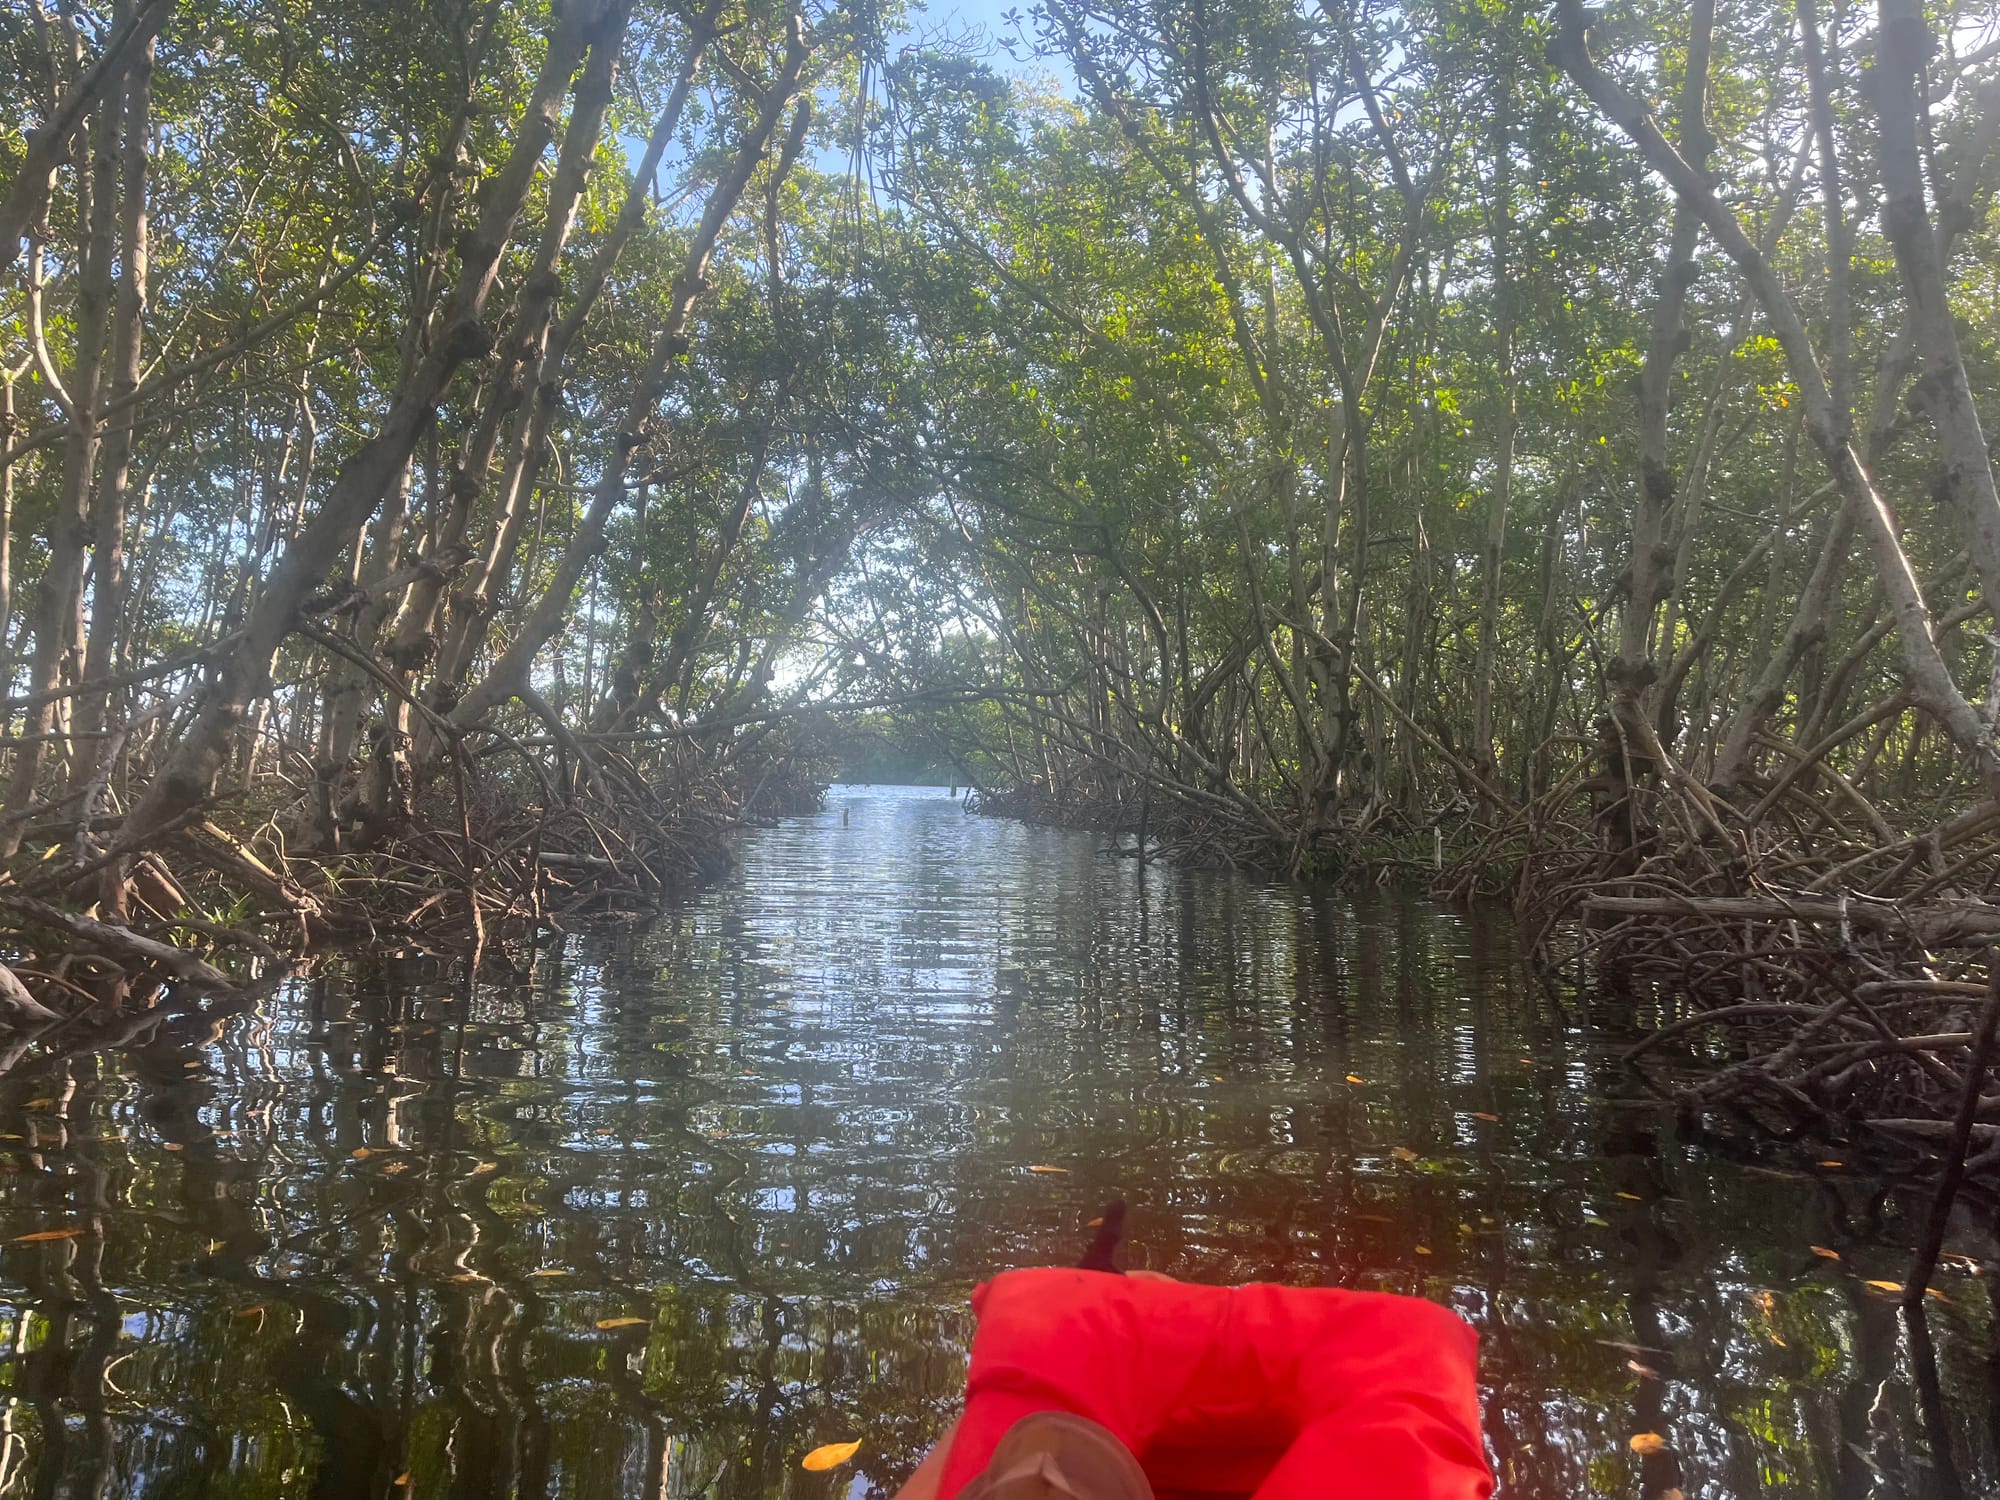 Kayaking through mangroves in Florida